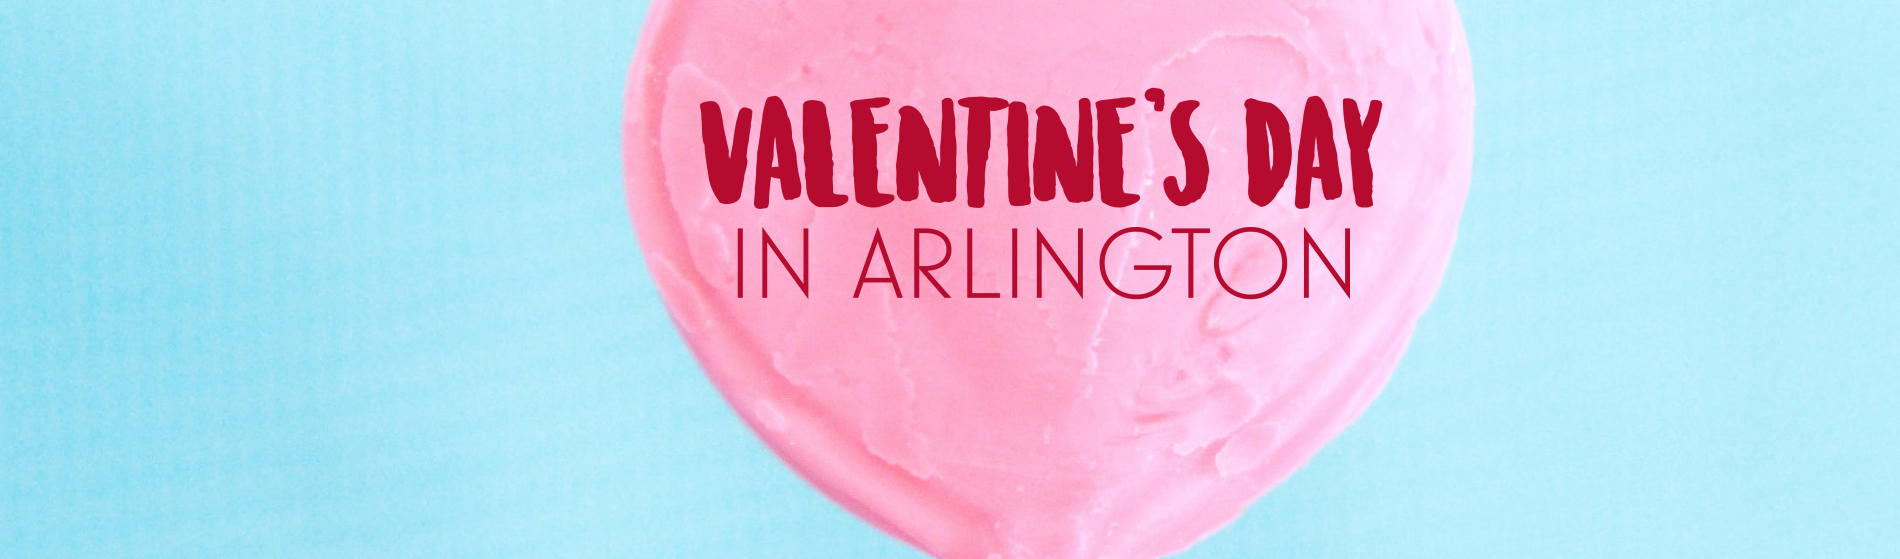 Celebrate Valentine's Day in Arlington